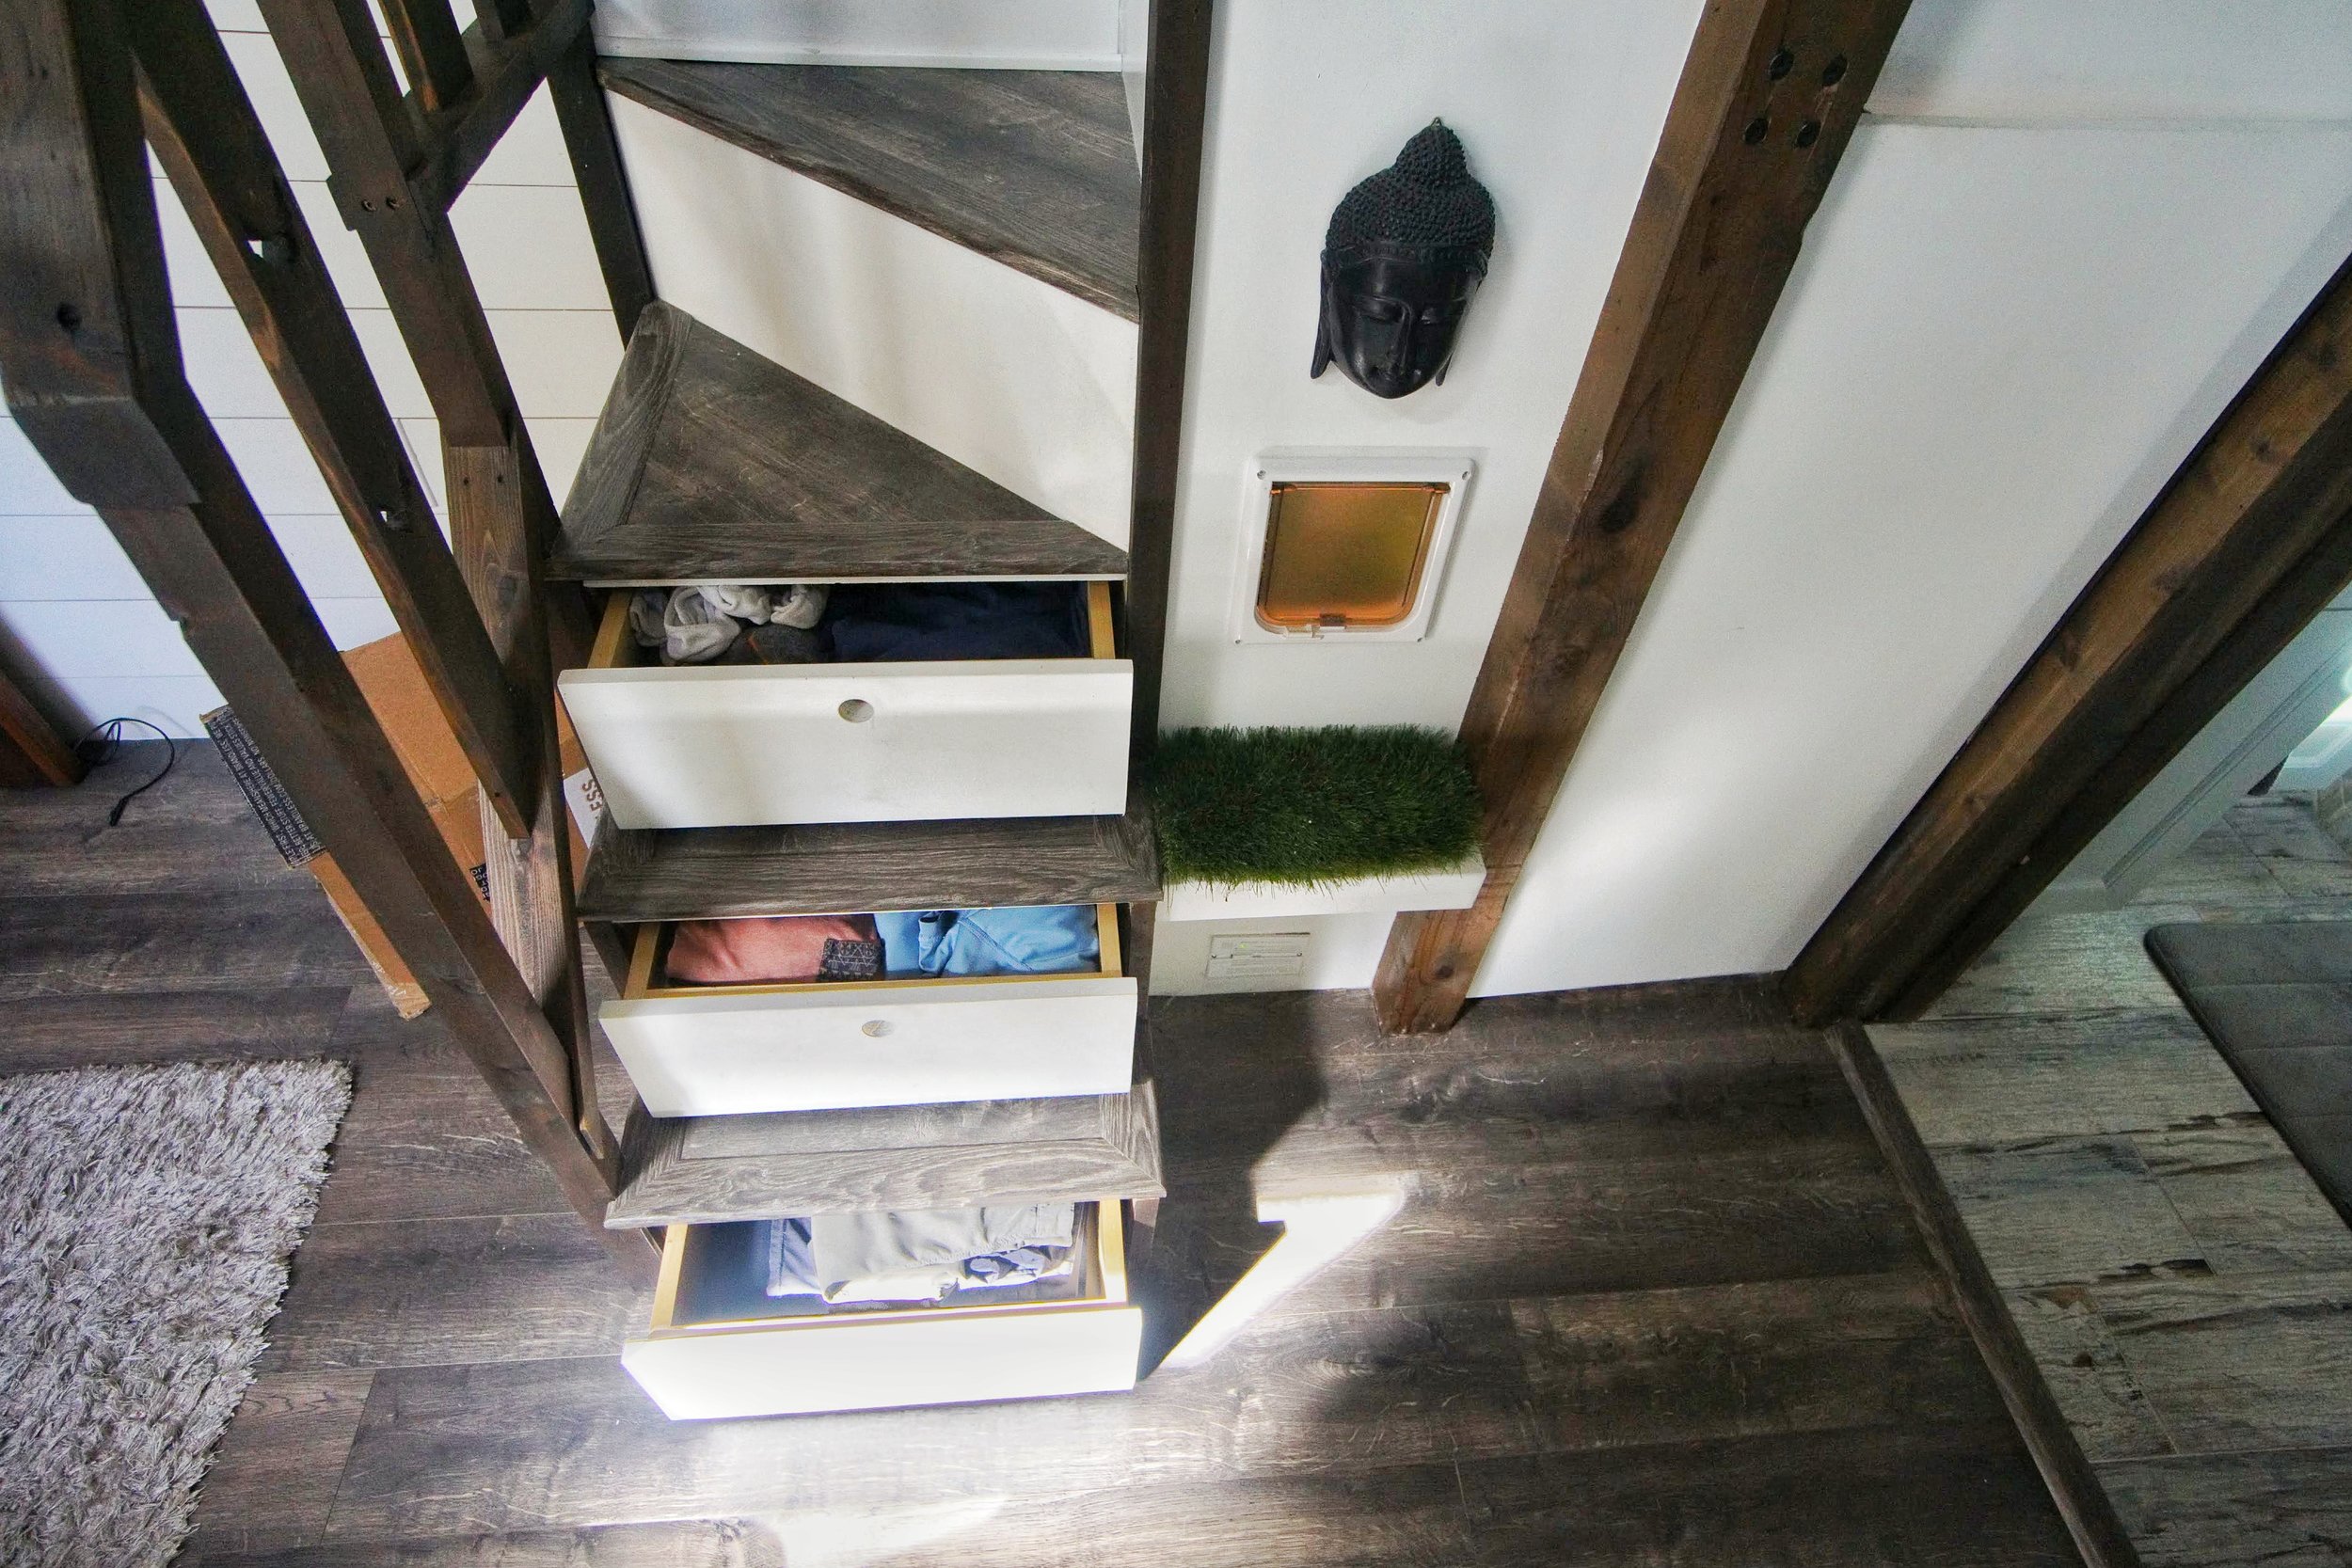 25 Tiny House Storage Ideas for Any Size Home — Tiffany The Tiny Home